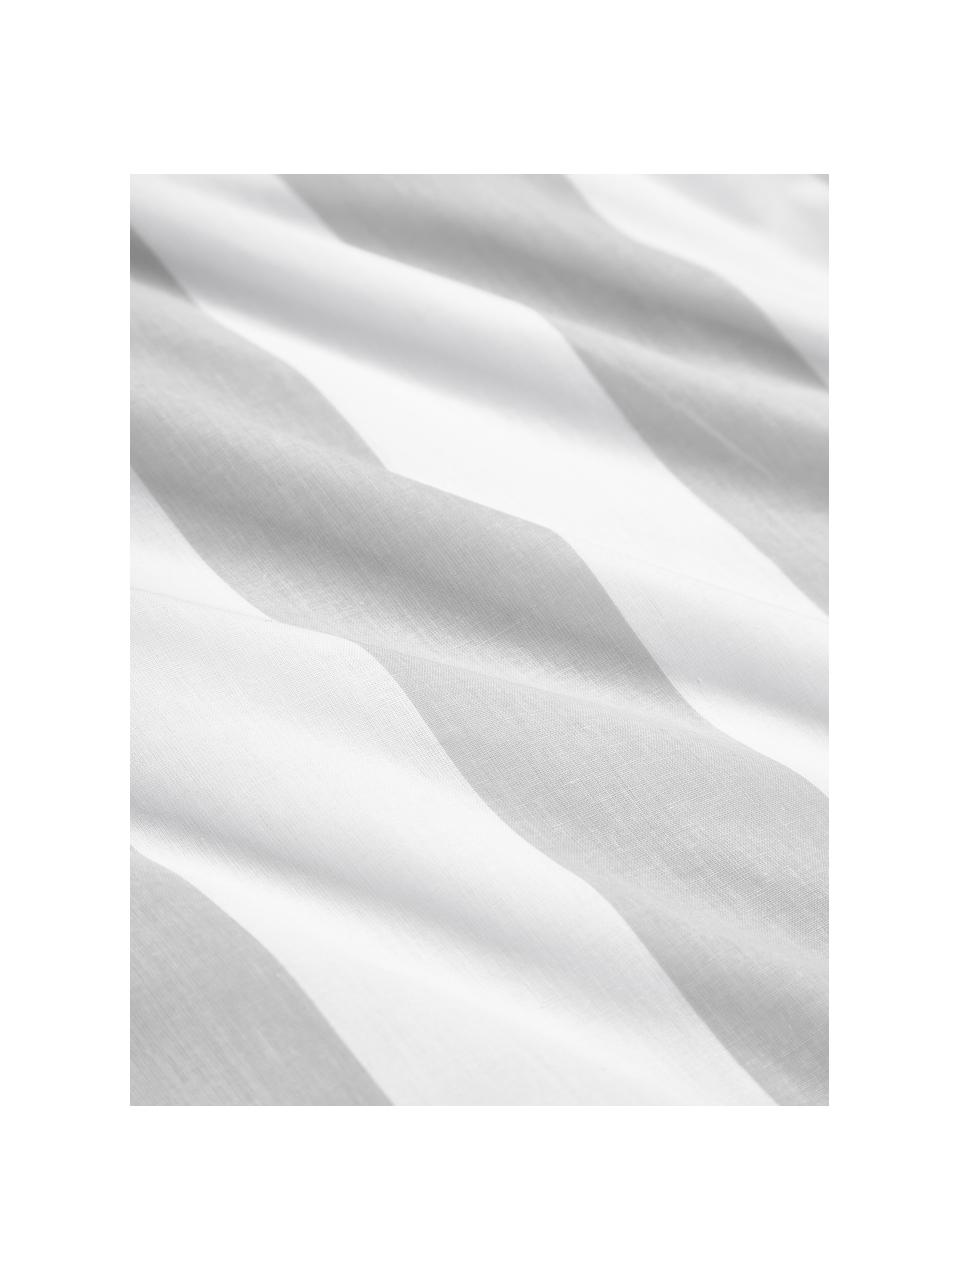 Dwustronna poszwa na kołdrę z bawełny Lorena, Jasny szary, biały, S 200 x D 200 cm